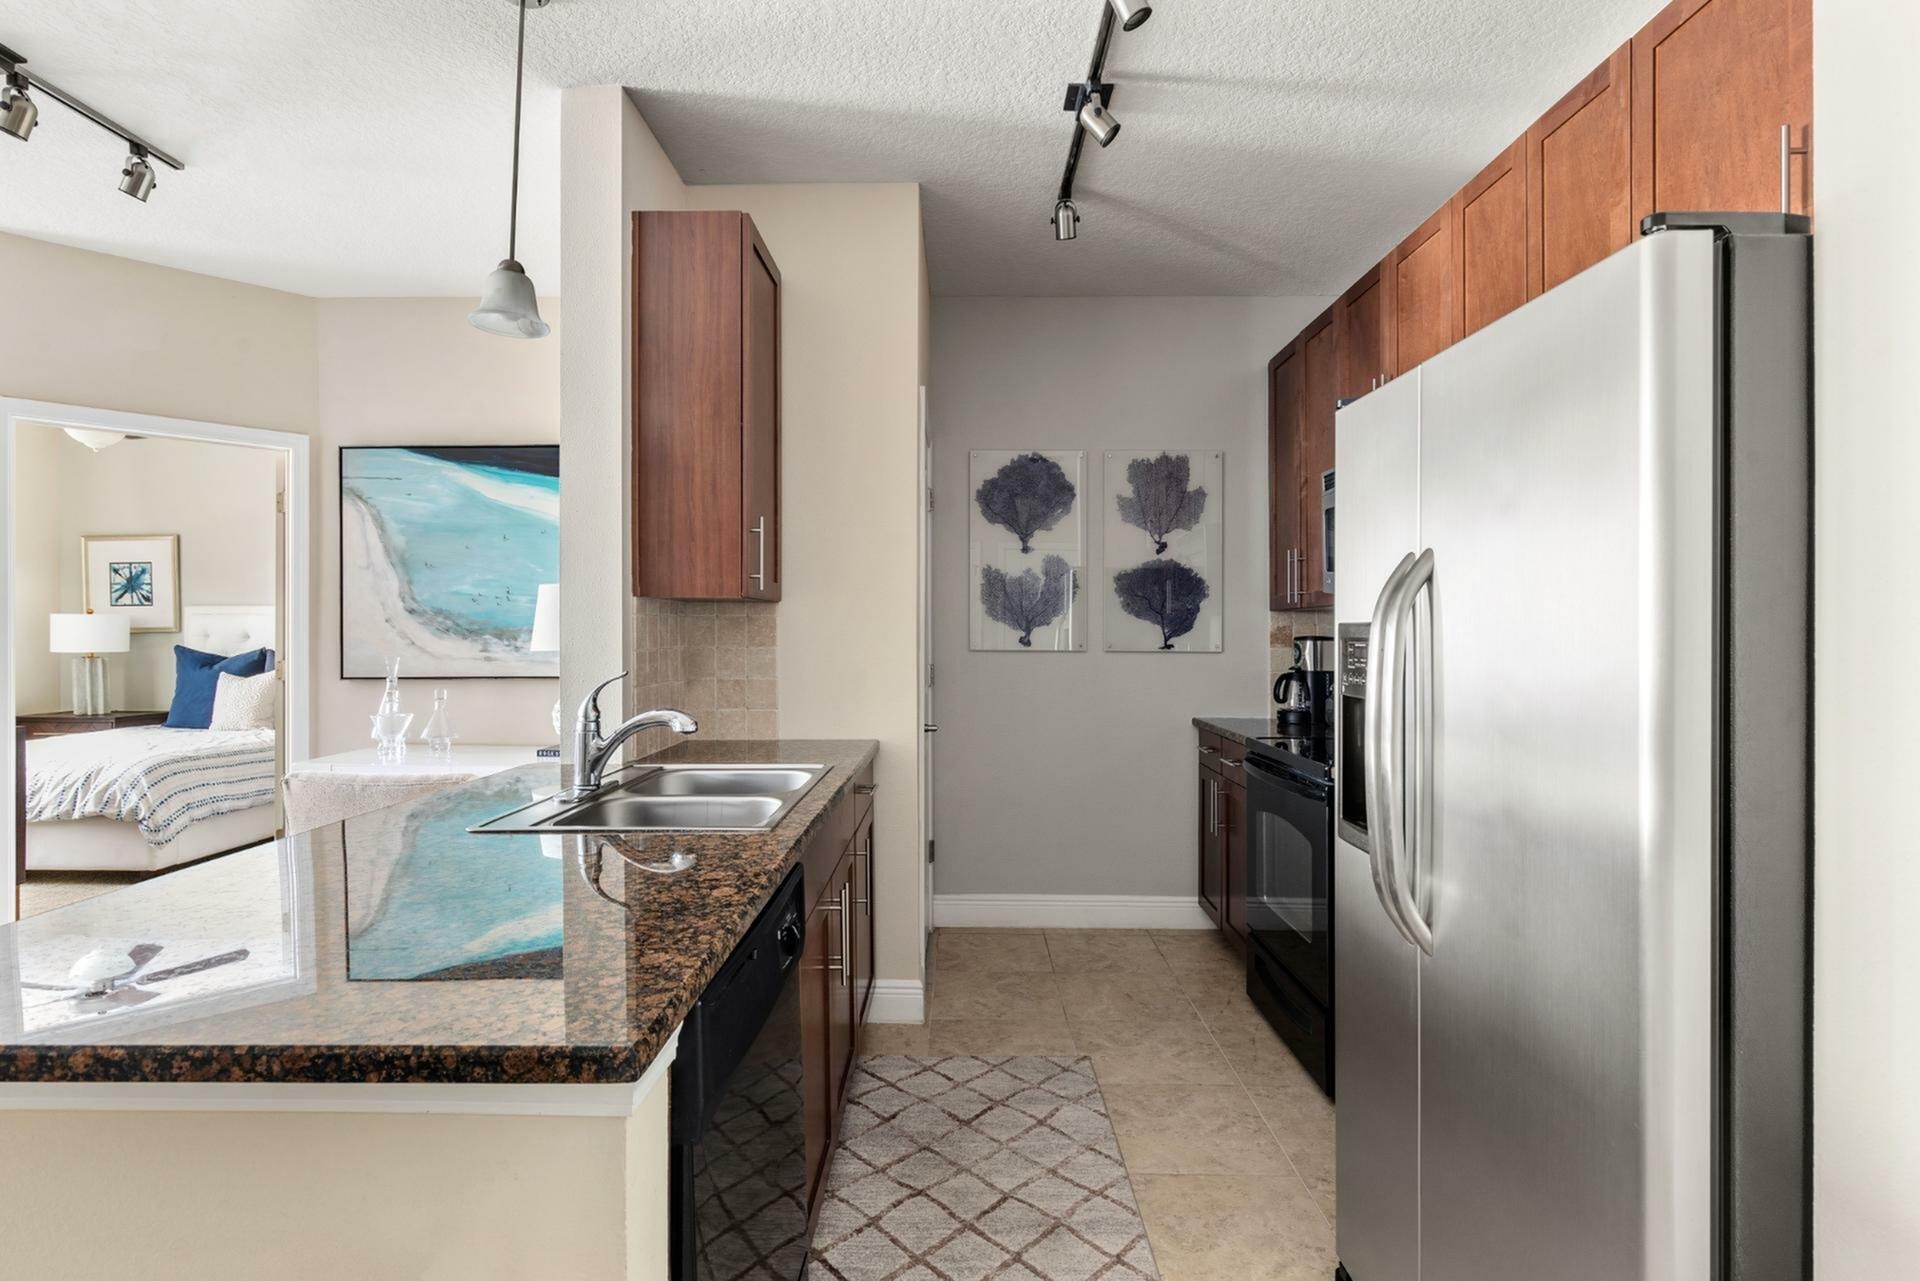 Kitchen | Apartments in Tampa, FL | Citrus Village